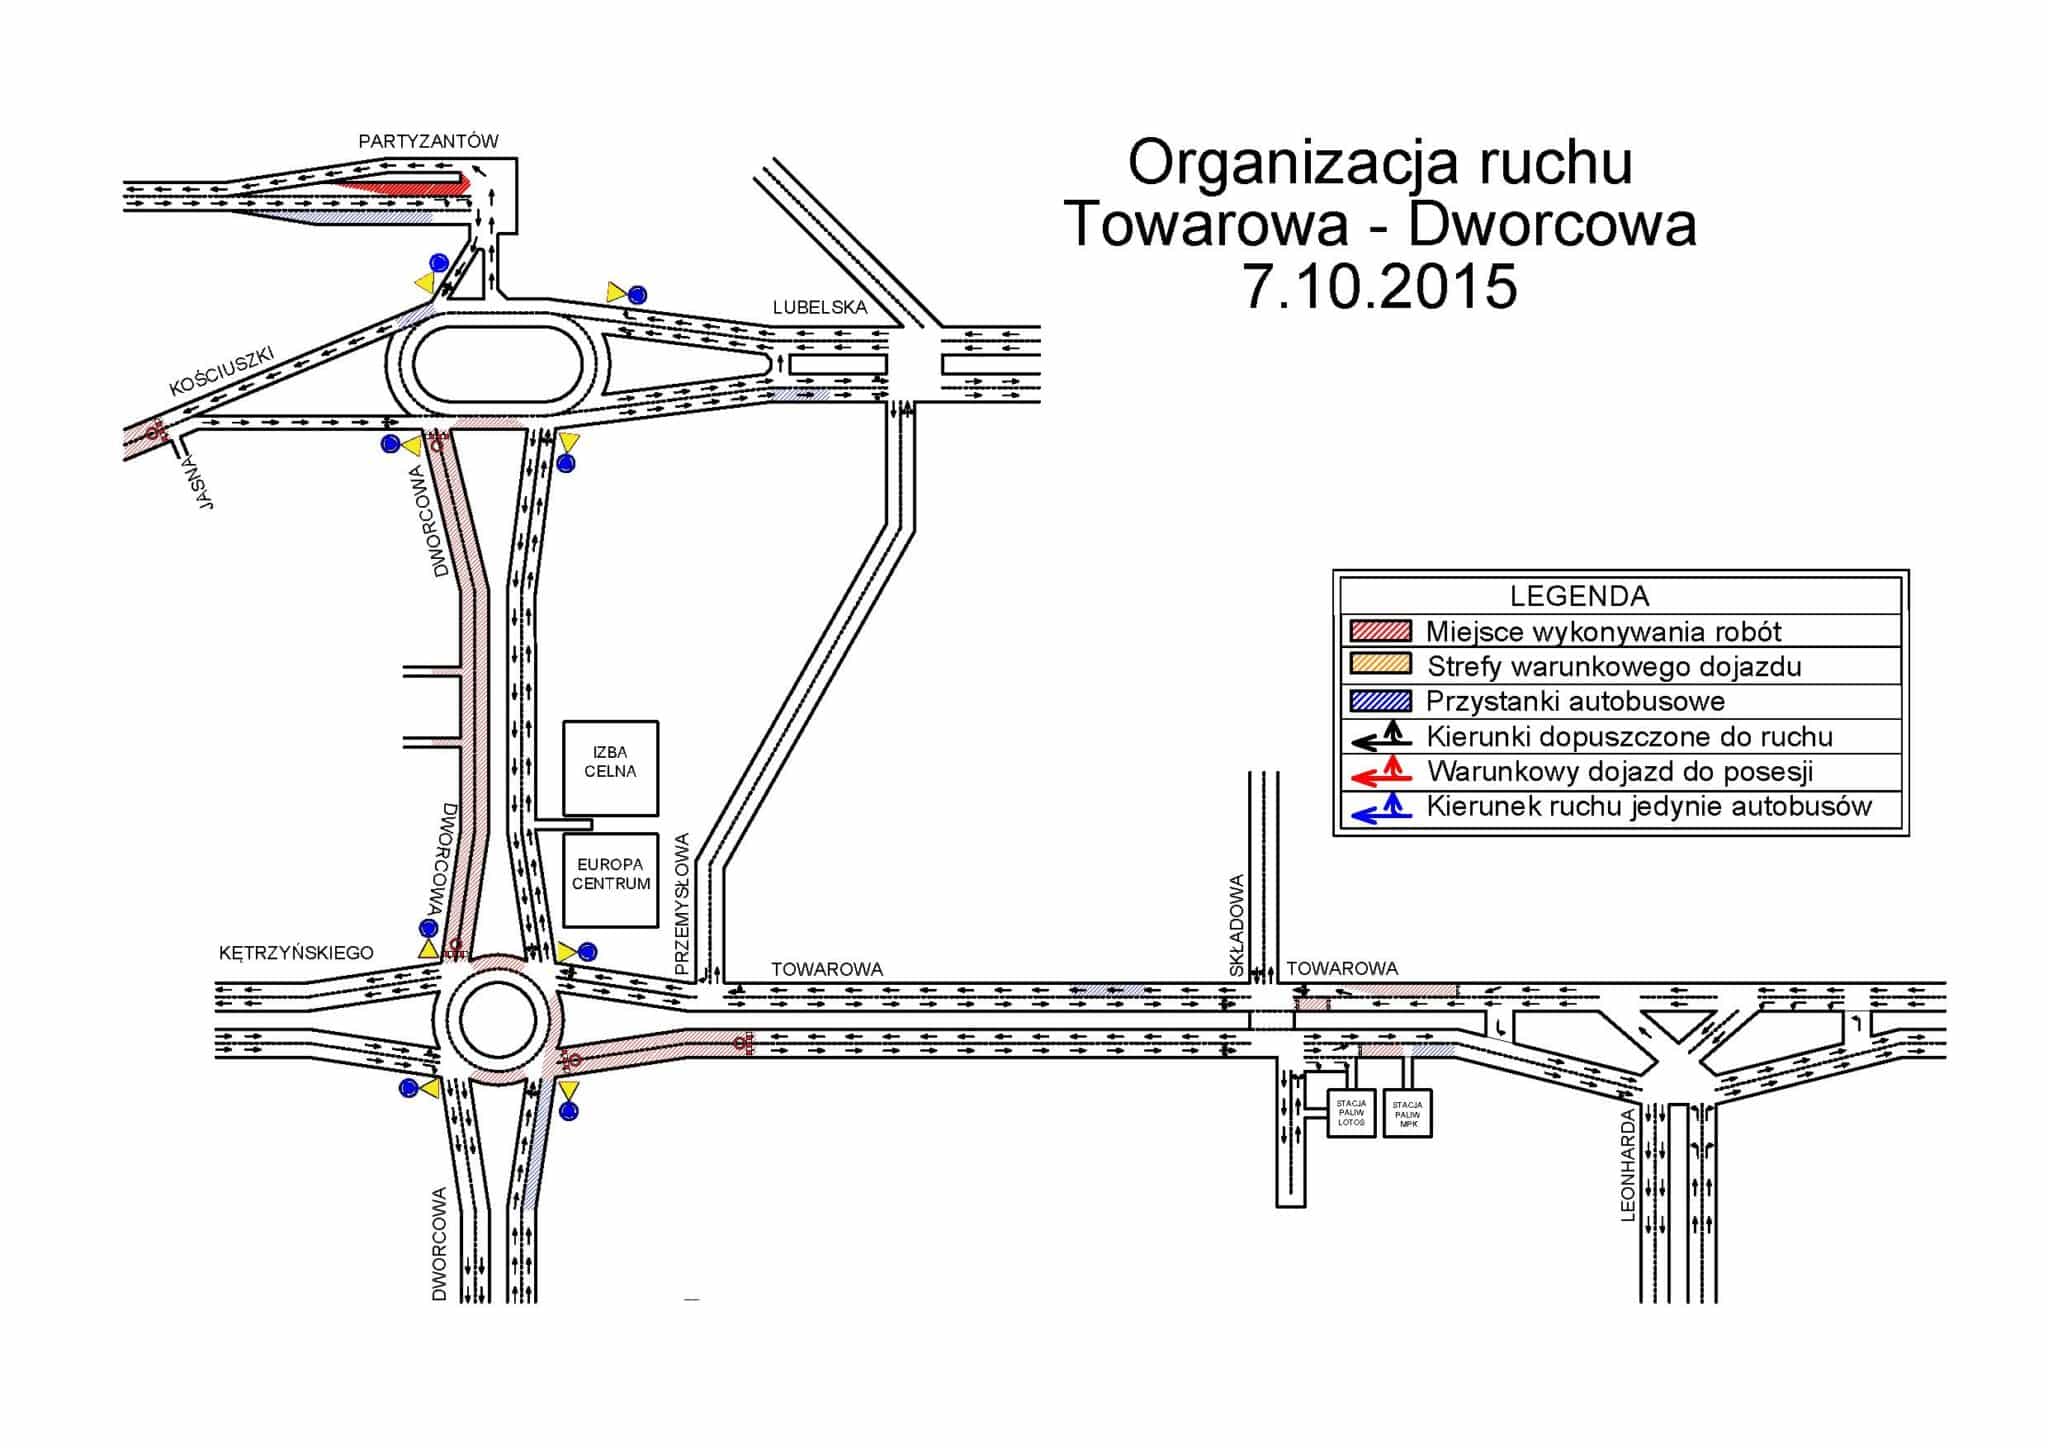 TOR-Dworcowa-Towarowa-zach 7.10.2015